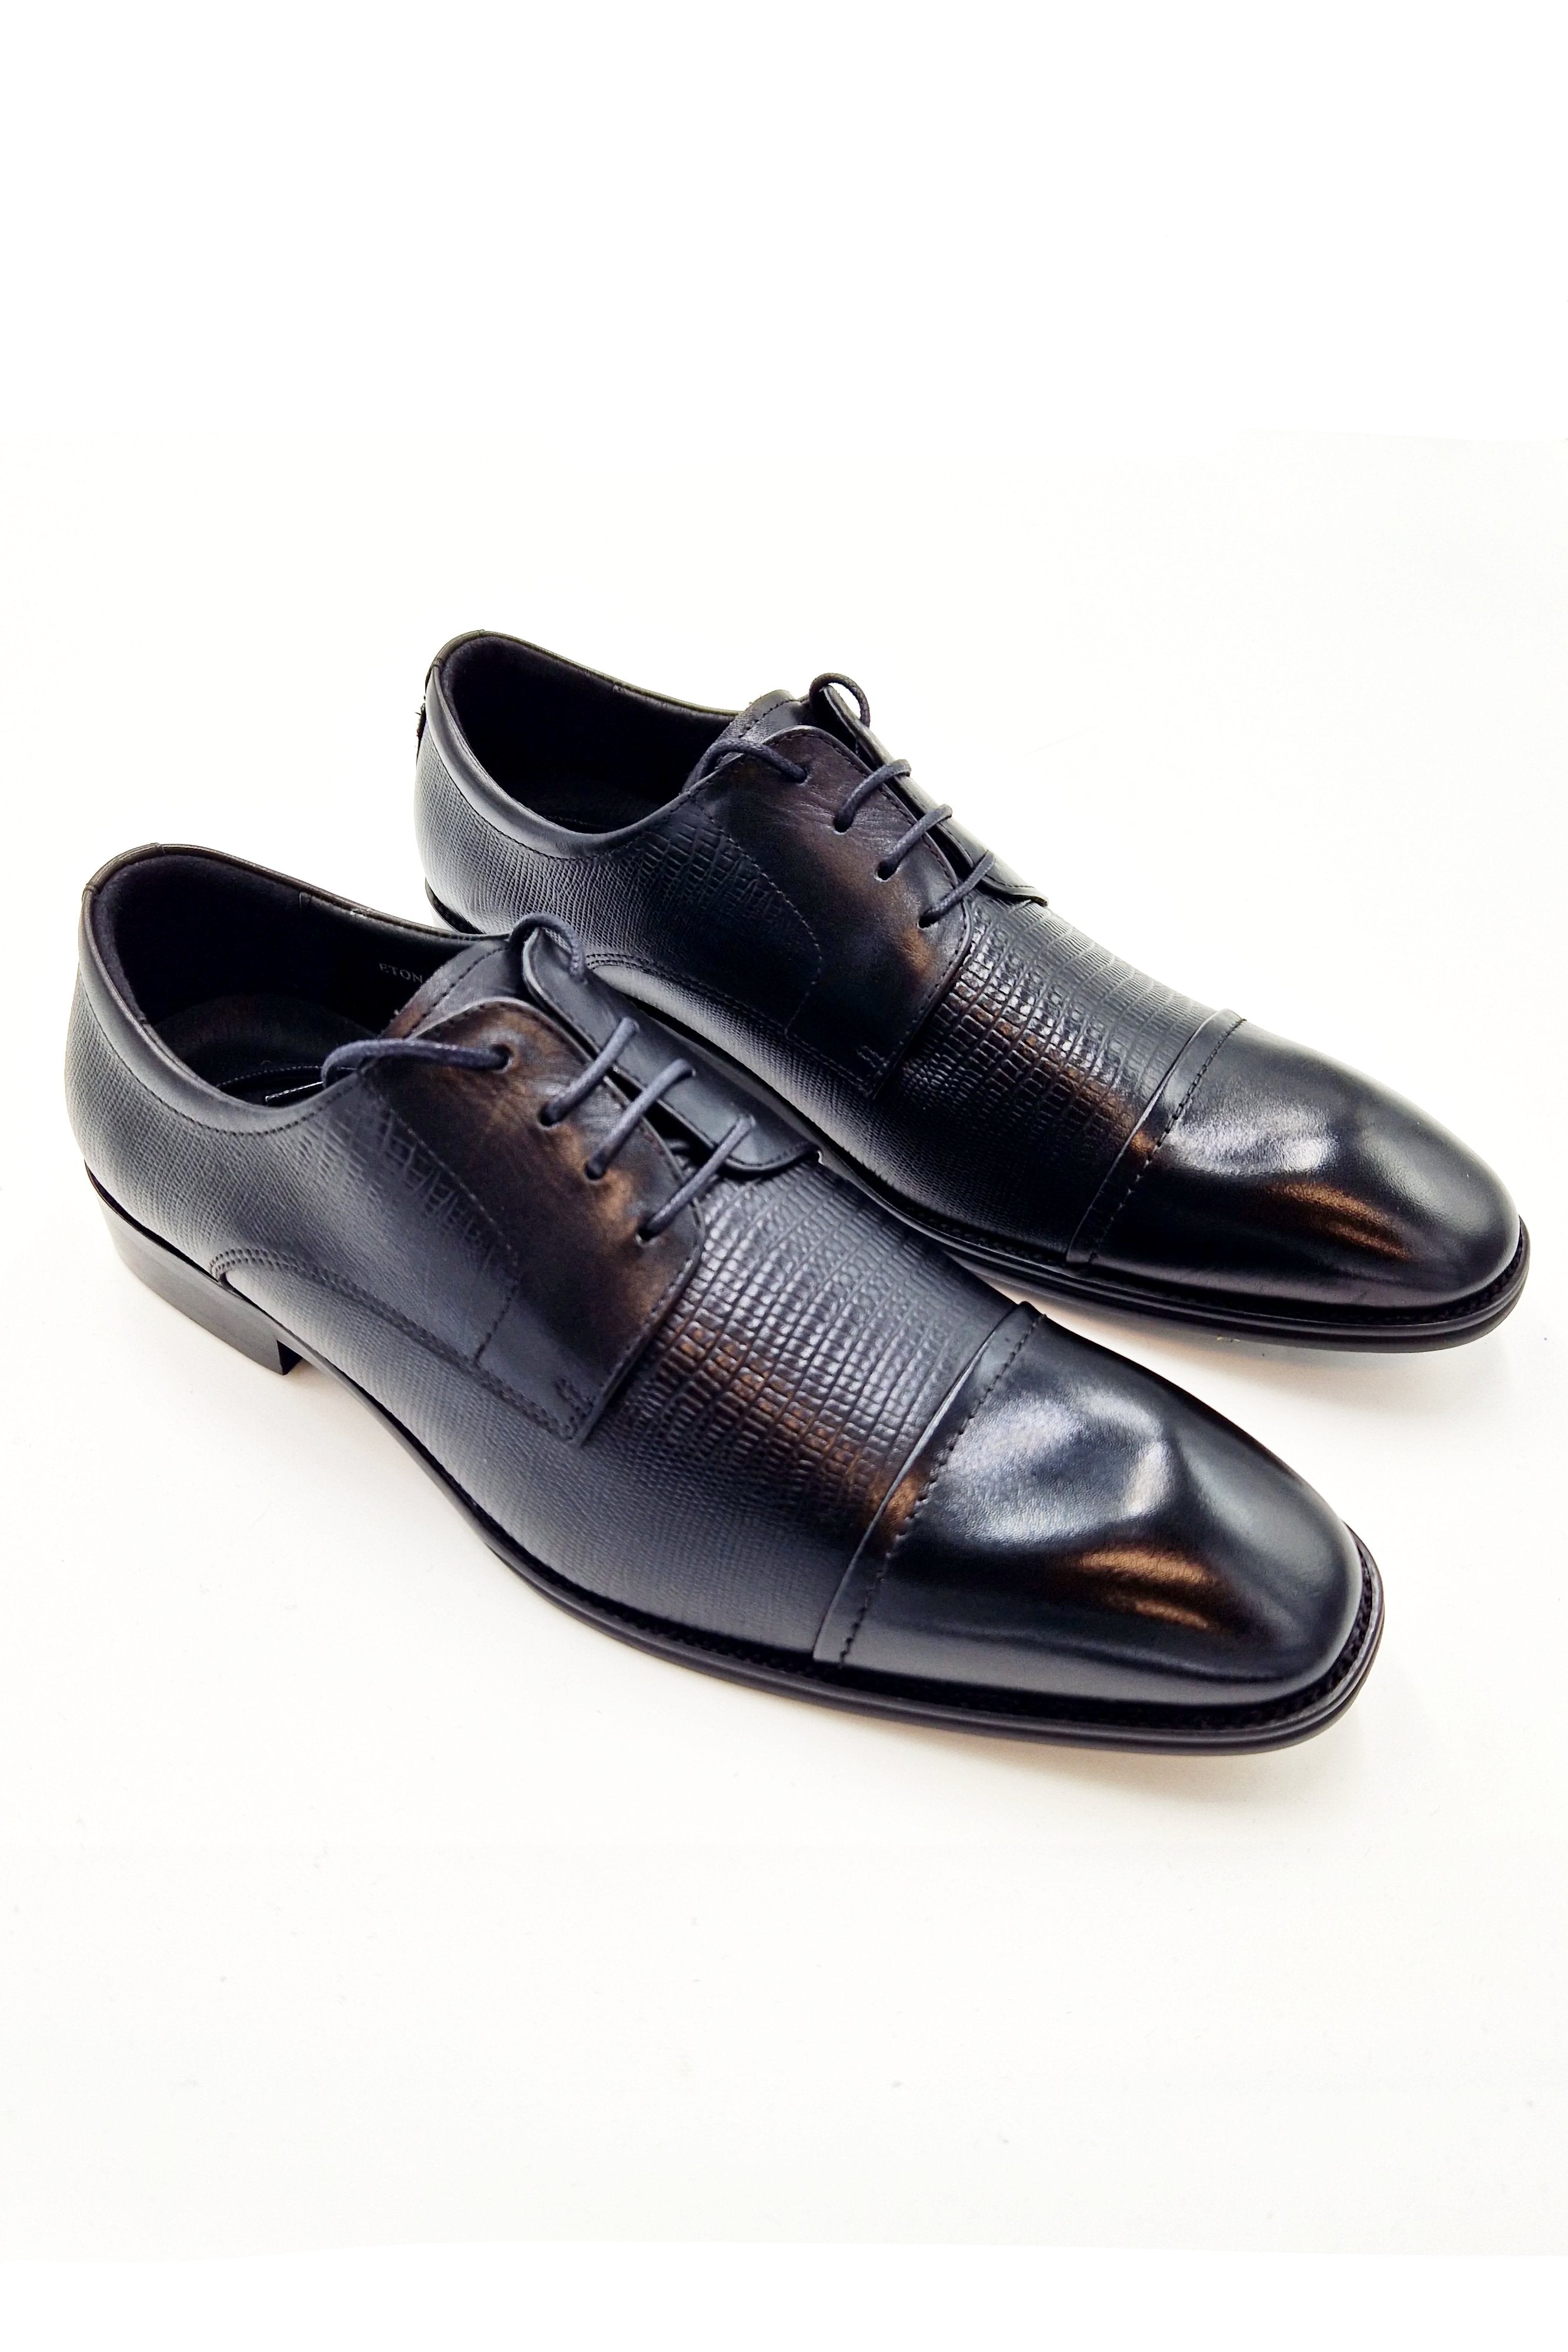 Eton Mens Formal Shoe Black Leather by 6th Sense